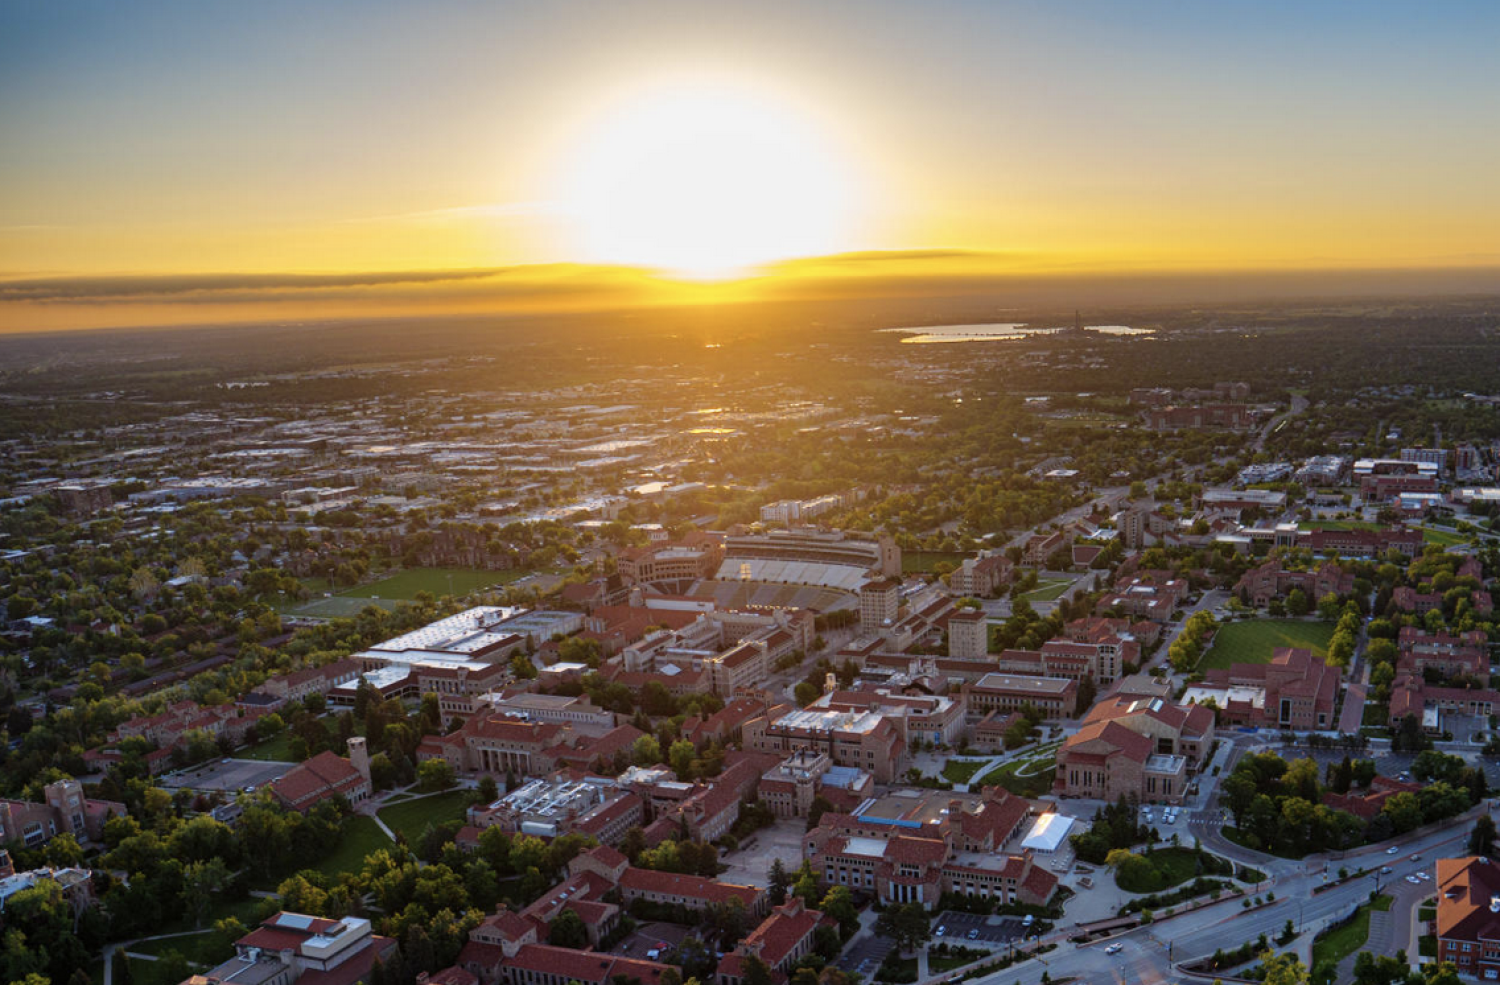 Boulder sunset over campus